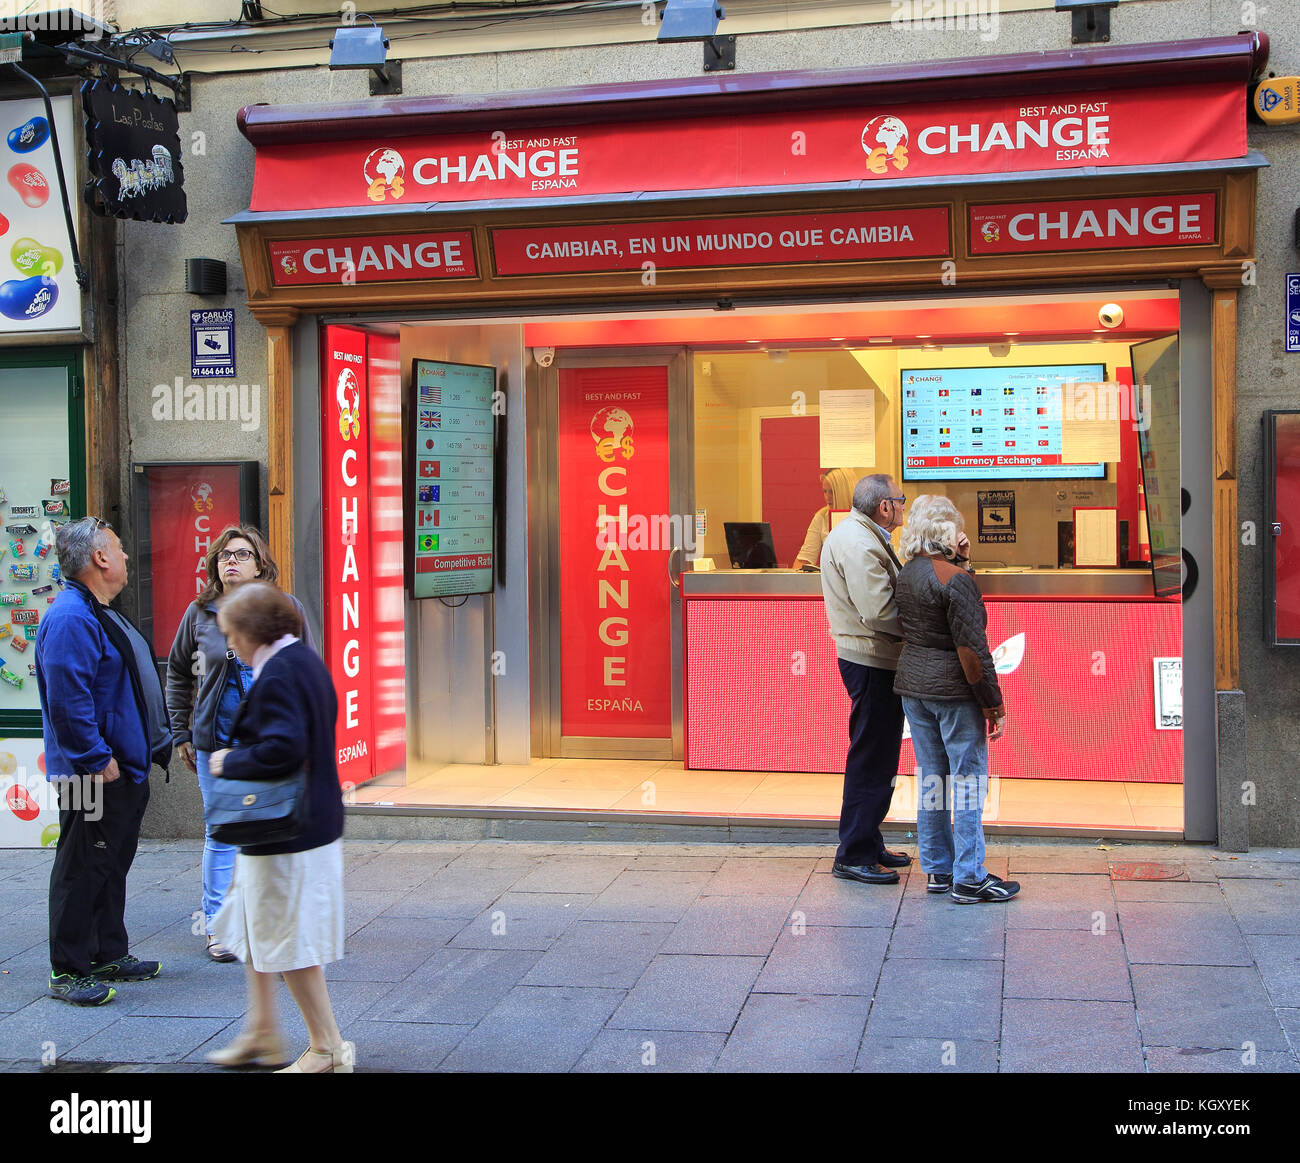 Bureau de Change money exchange Best and Fast shop in Madrid city centre,  Spain Stock Photo - Alamy